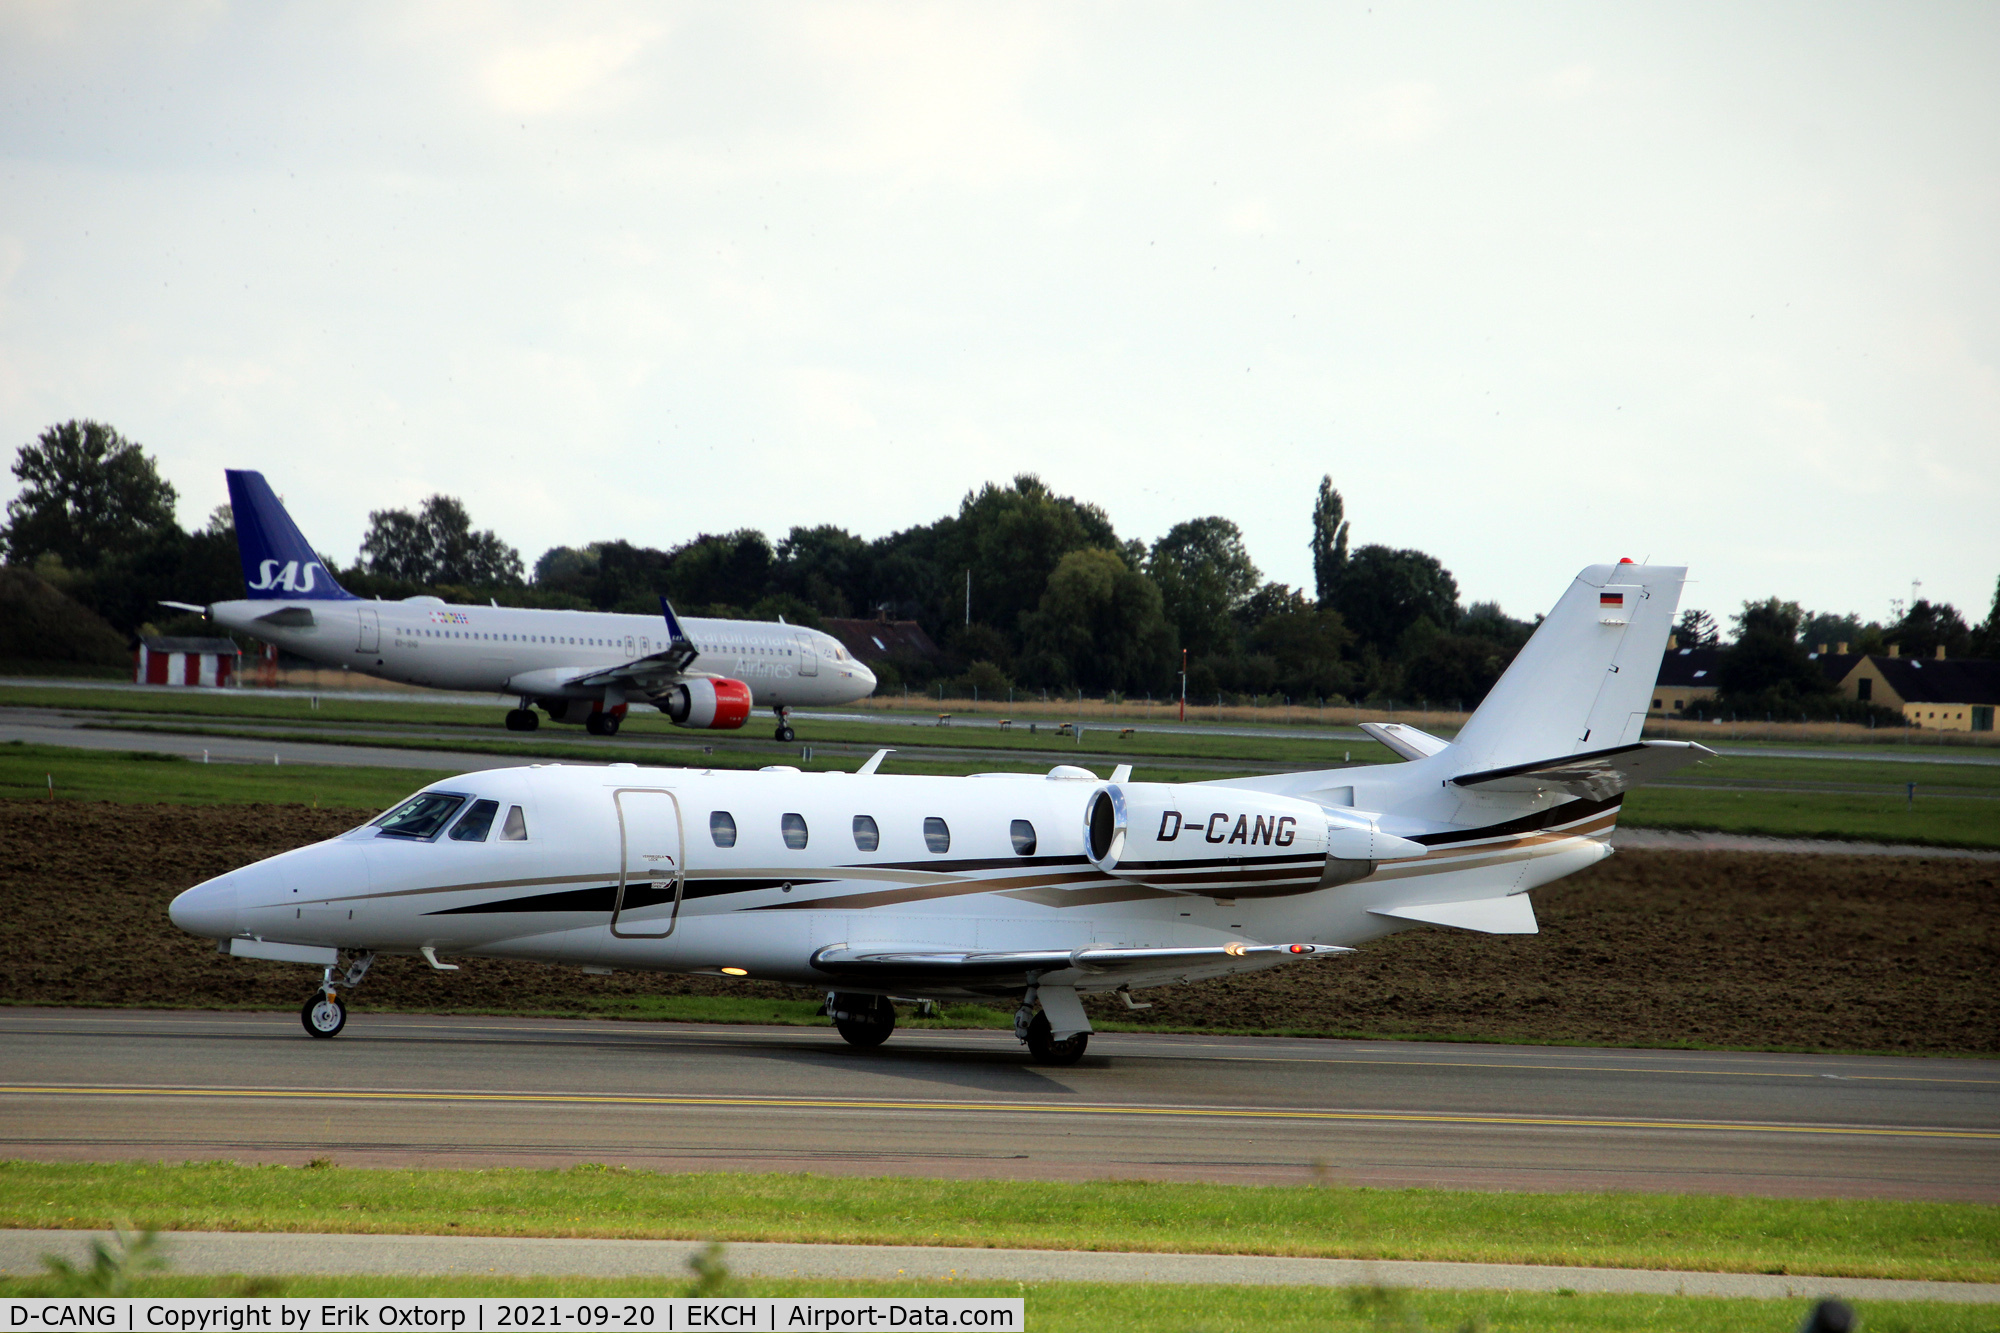 D-CANG, 2013 Cessna 560 Citation Excel XLS+ C/N 560-6128, D-CANG landed rw 04L